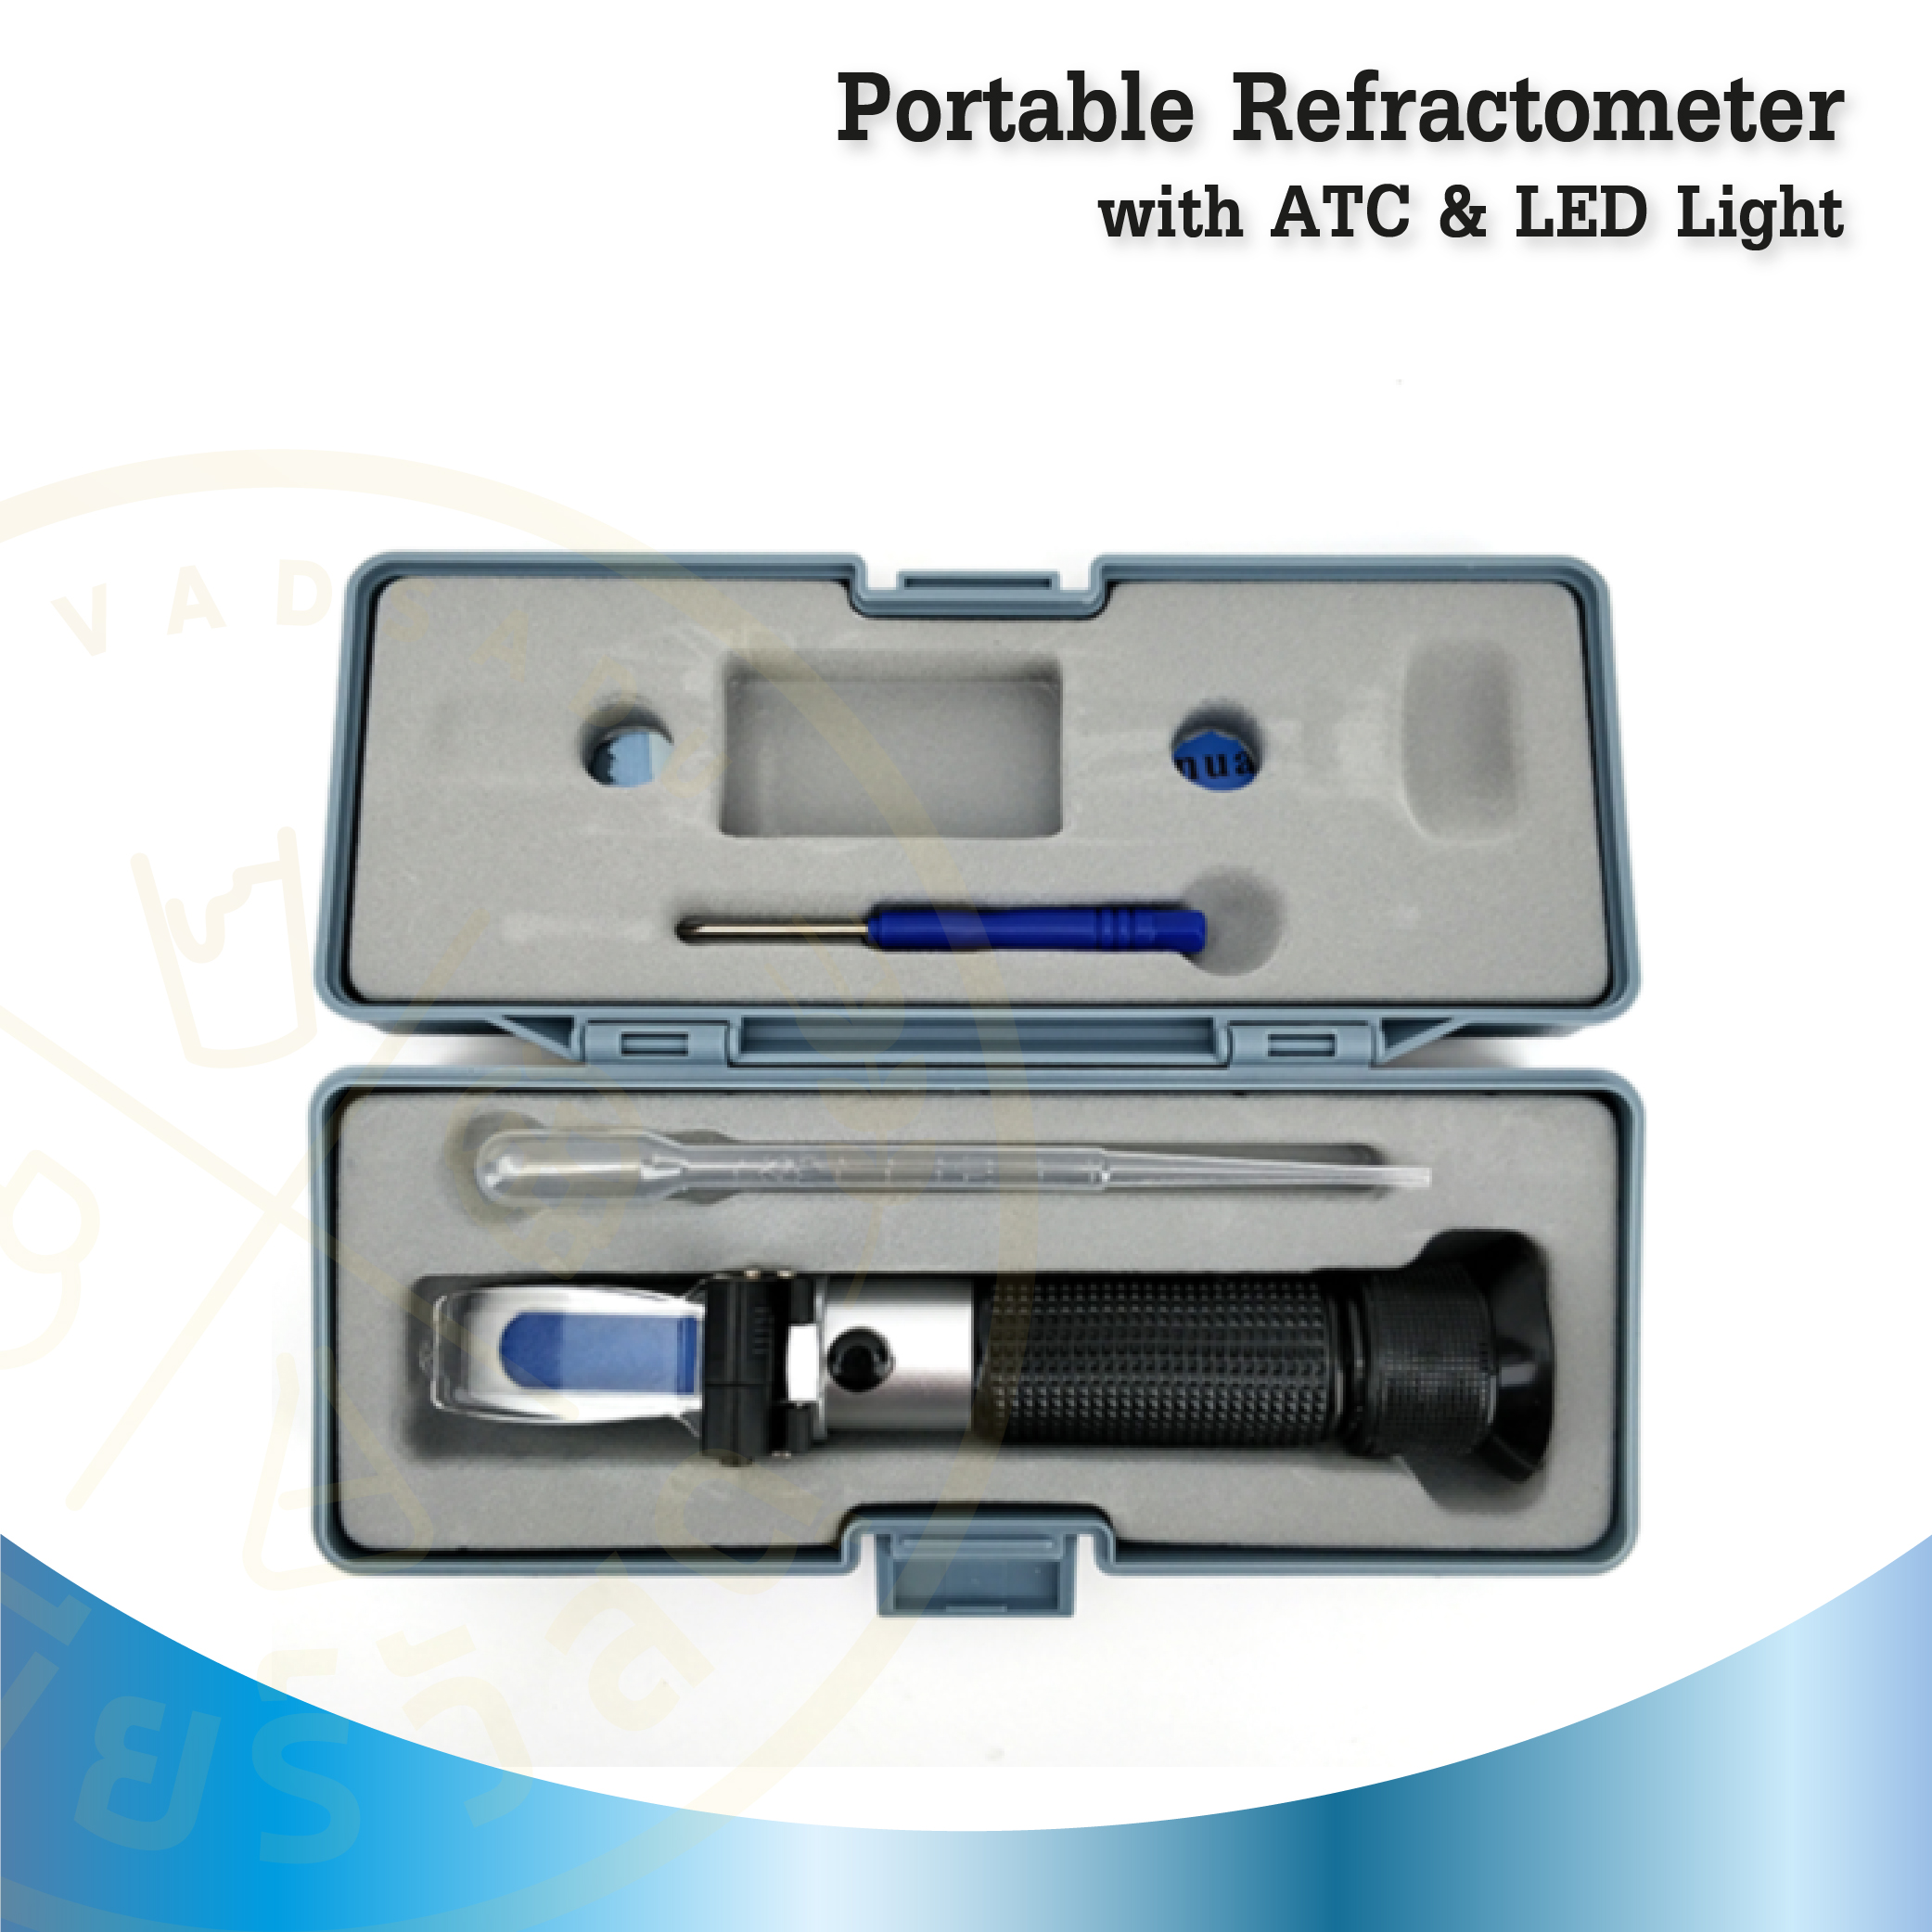 รีแฟลคโตเมเตอร์ Portable Refractometer with ATC & LED Light